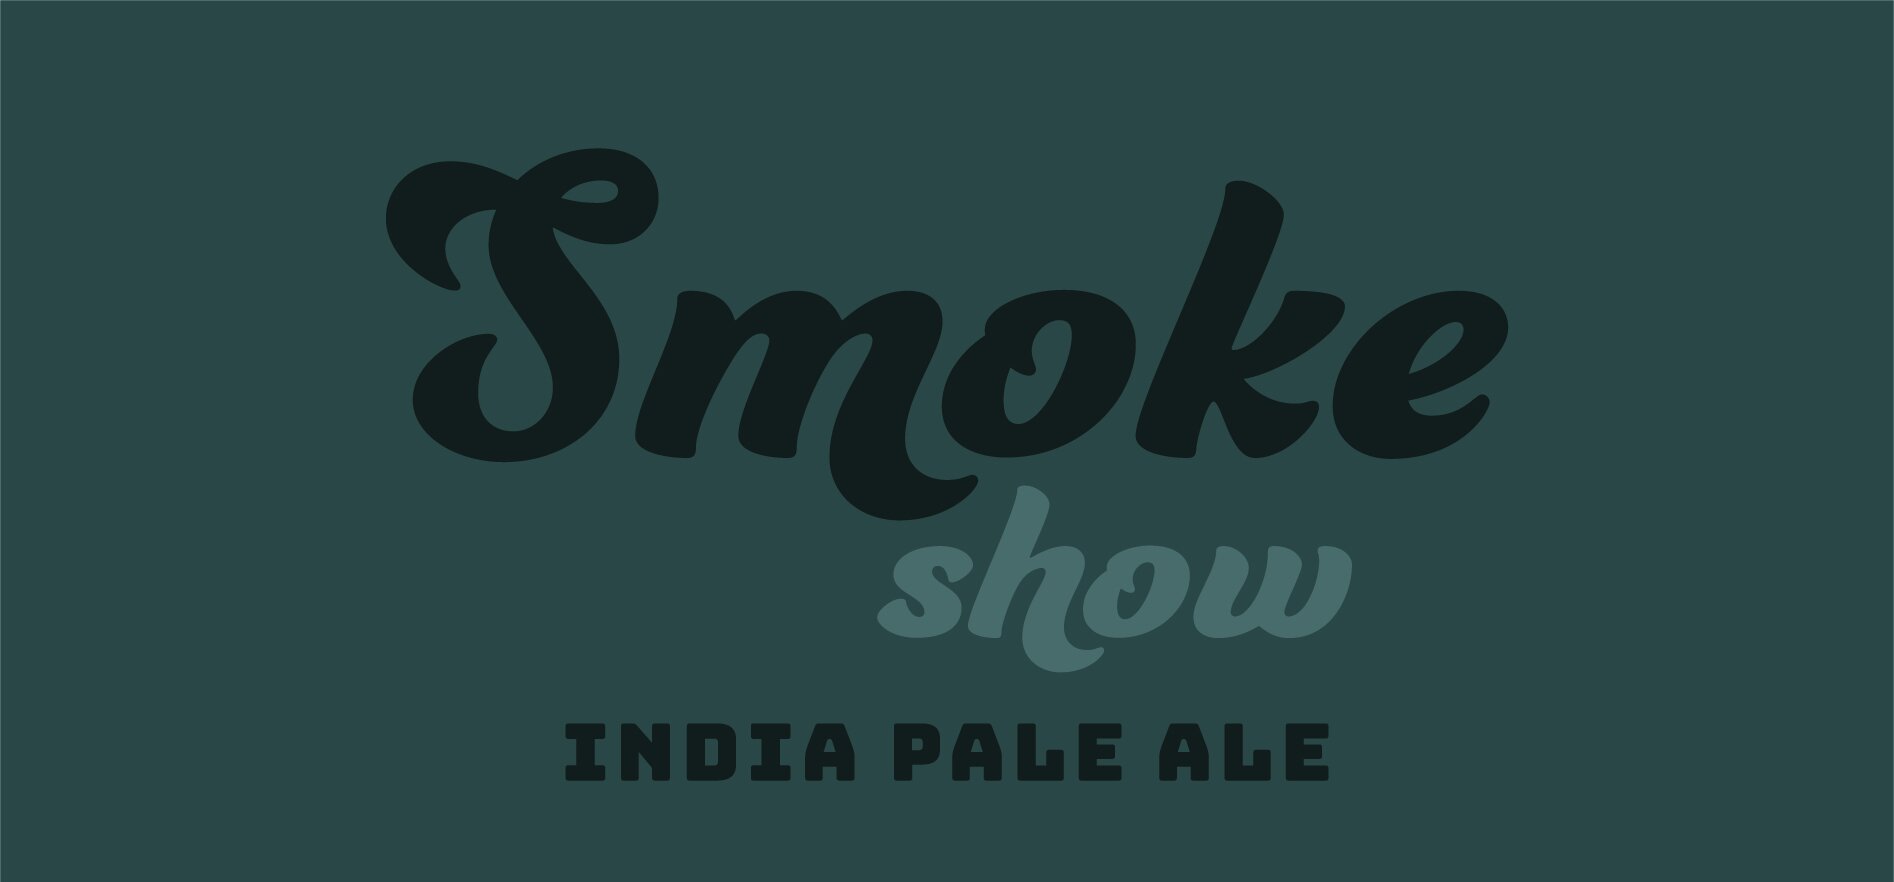 Smoke Show IPA.jpg